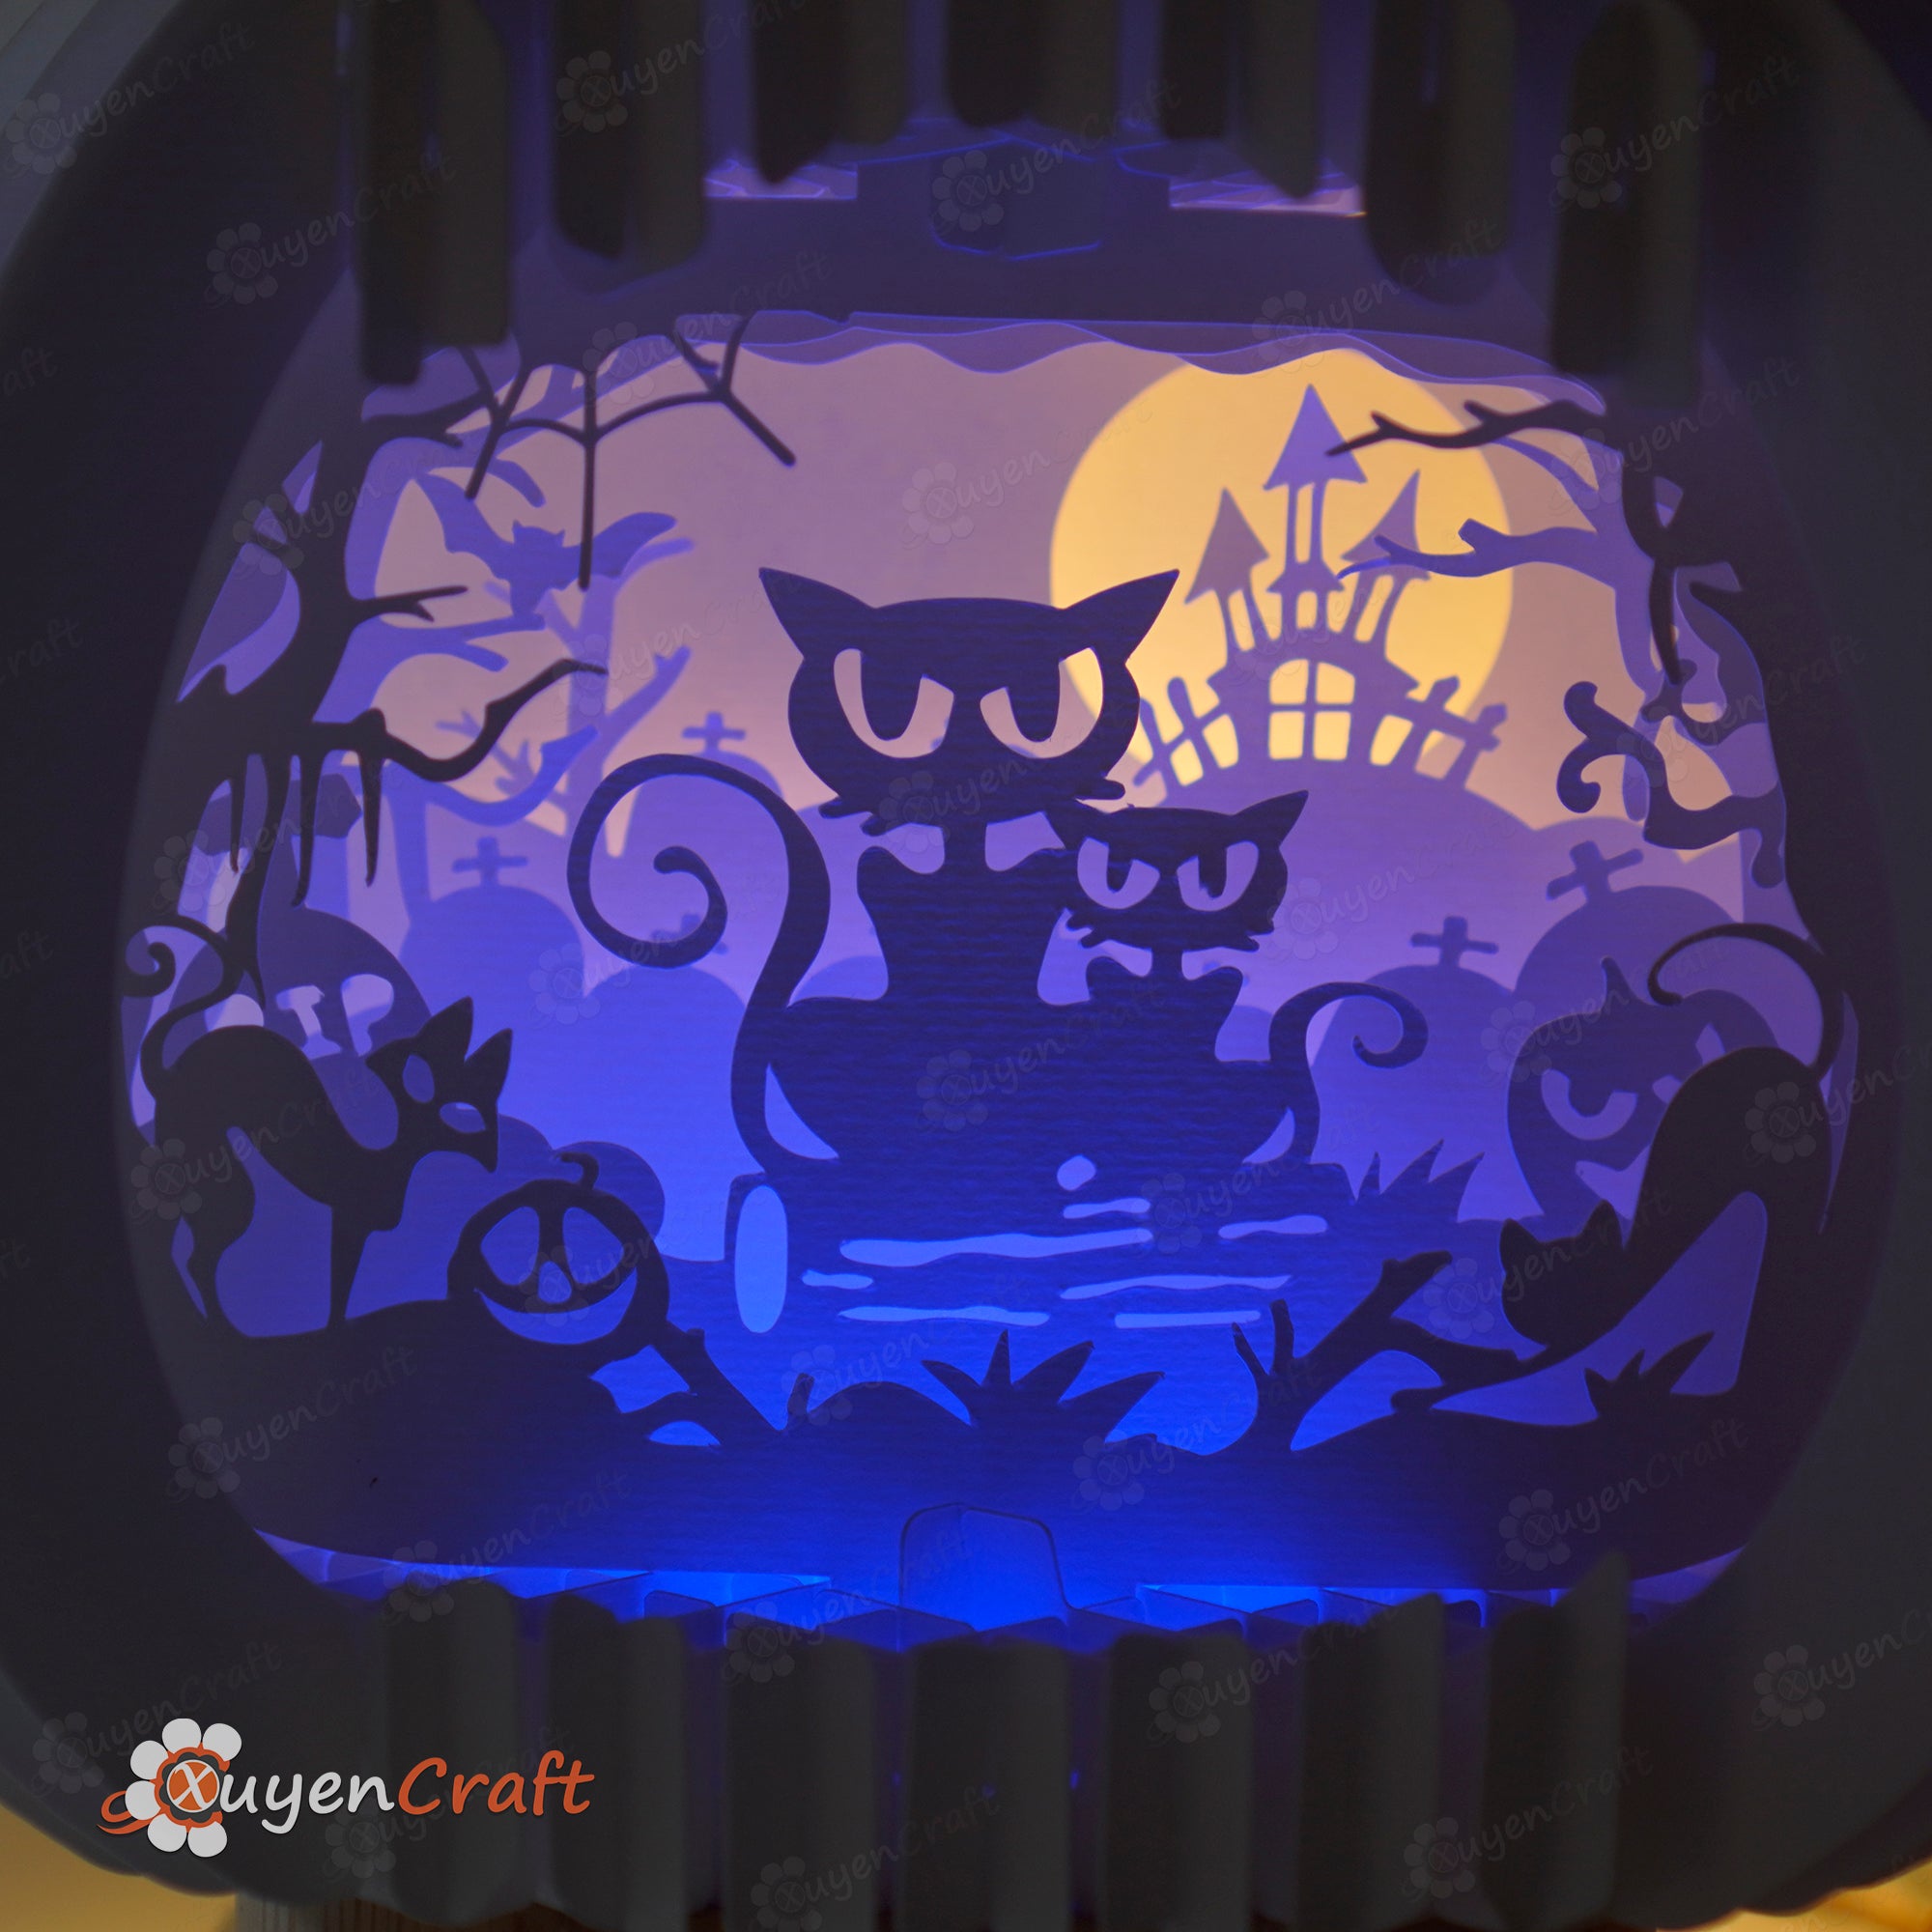 Black Cat Halloween Pumpkin Pop Up 3D SVG Cricut, Cameo4 Template